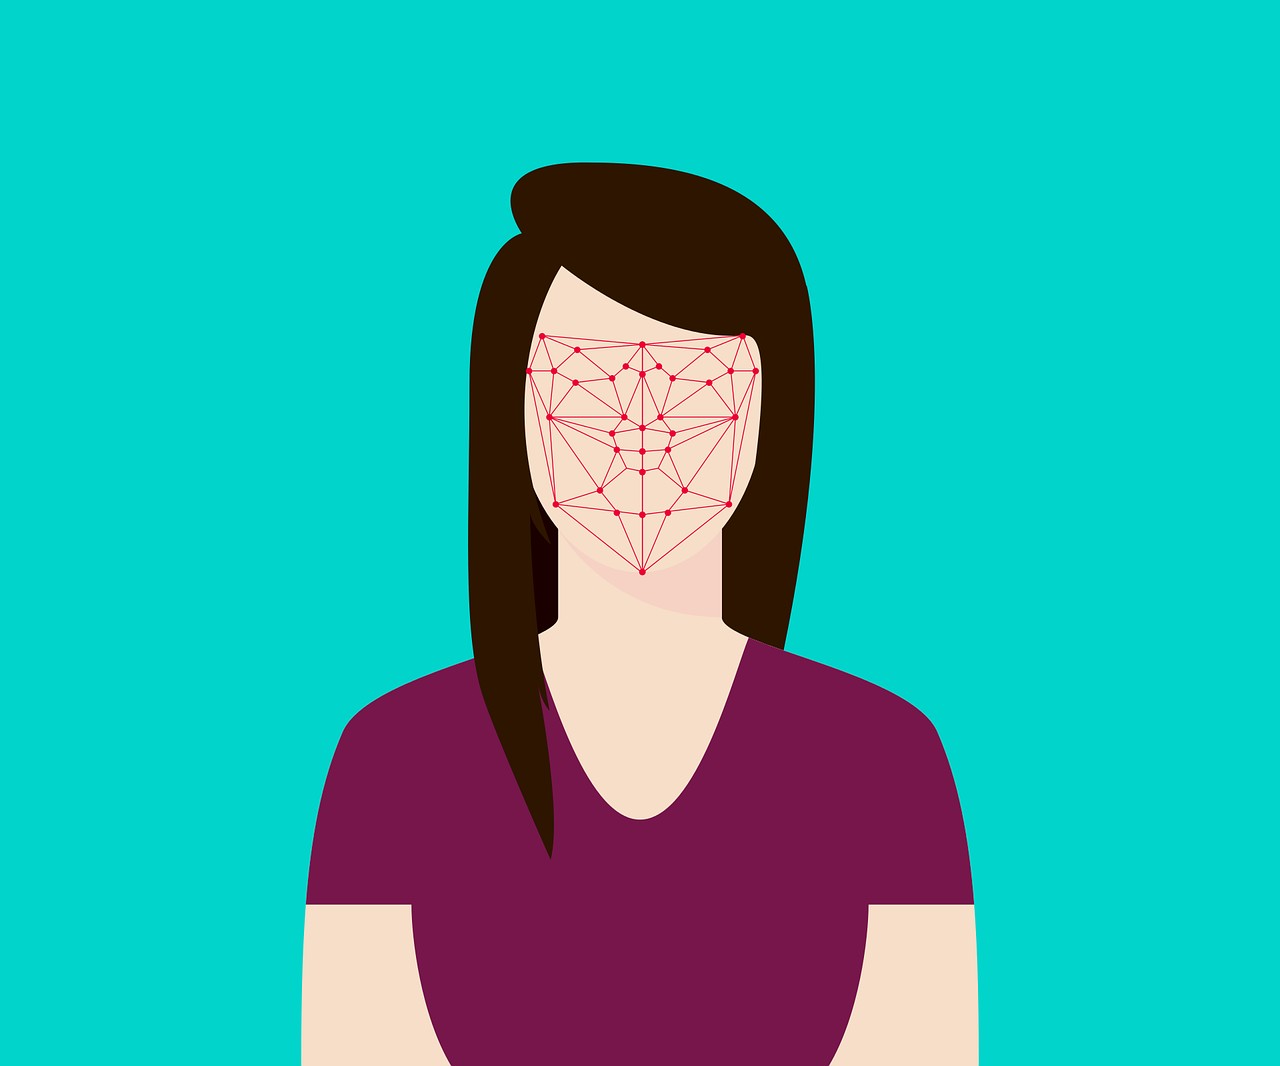 Tecnologias de reconhecimento facial usam inteligência artificial para identificar rostos humanos (Foto: Wikimedia Commons)